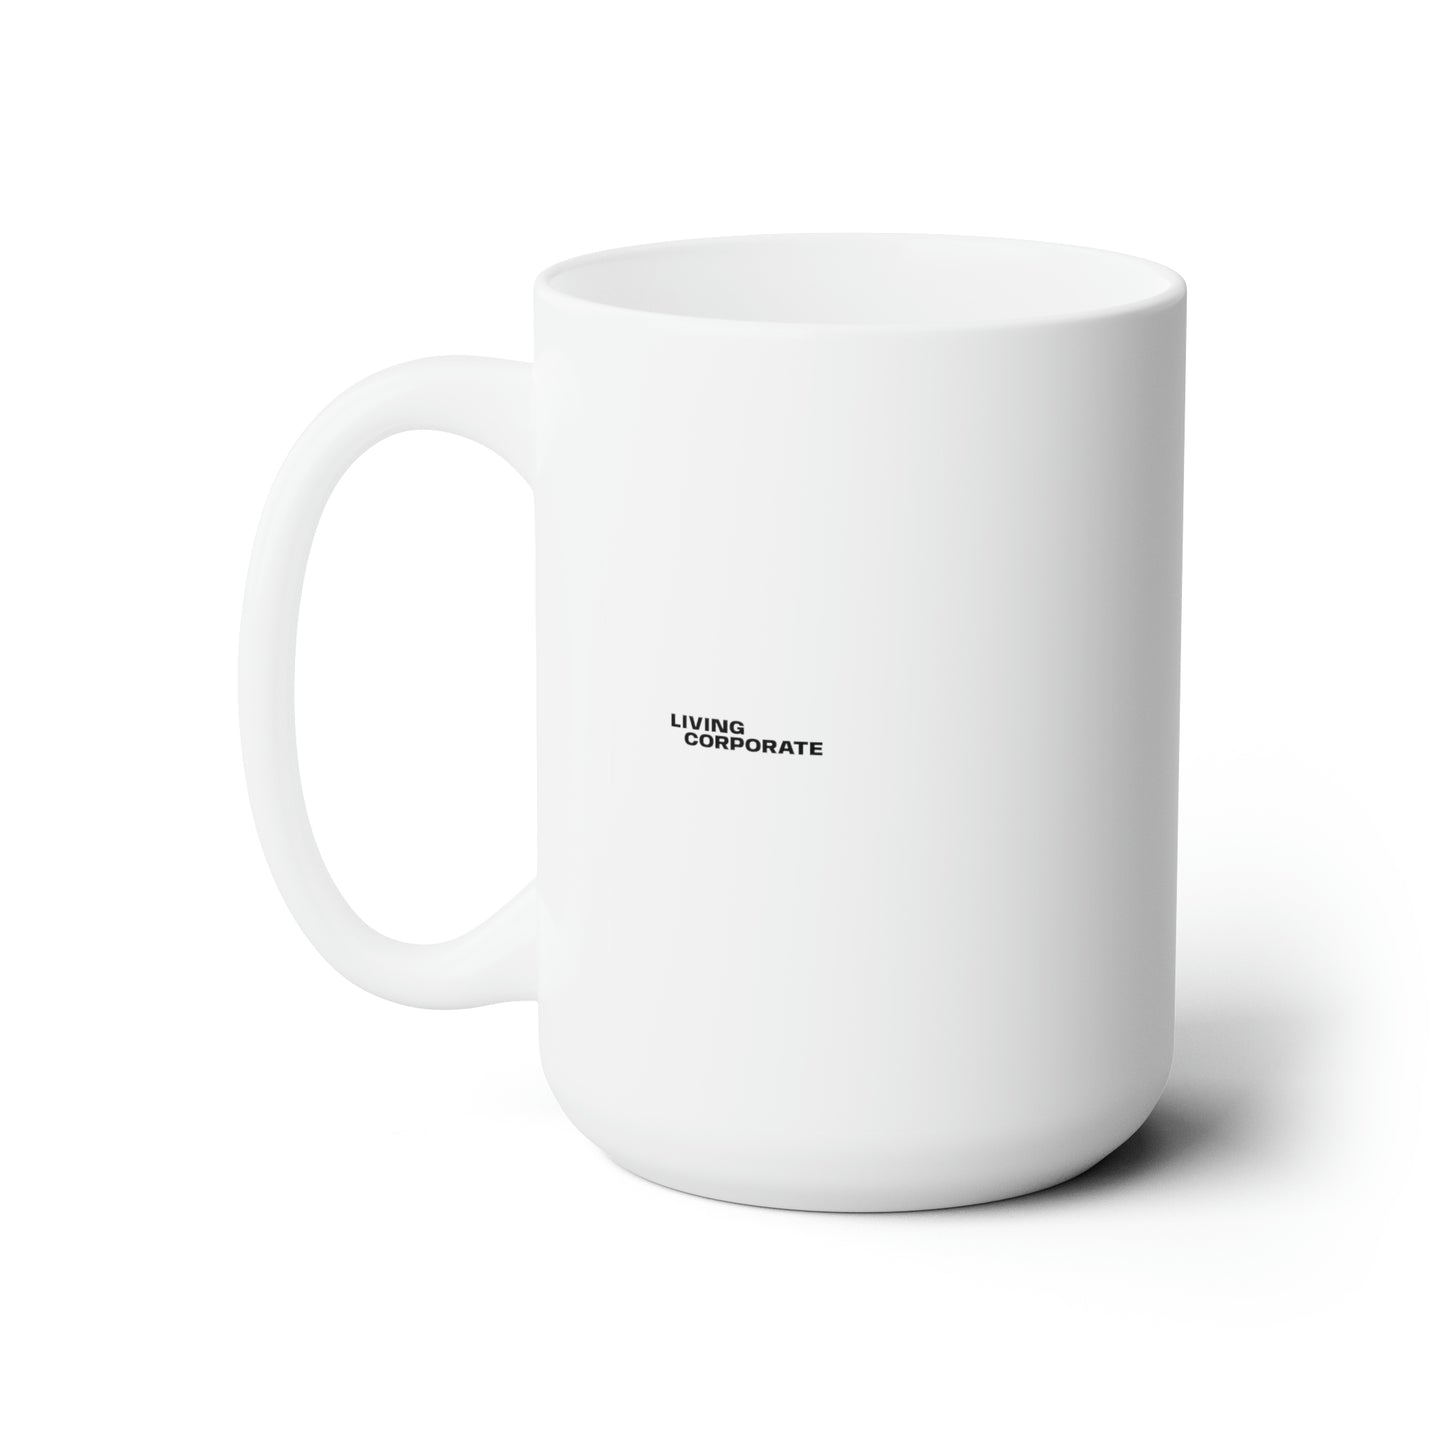 Purpose Over Paycheck | Ceramic Mug 15oz